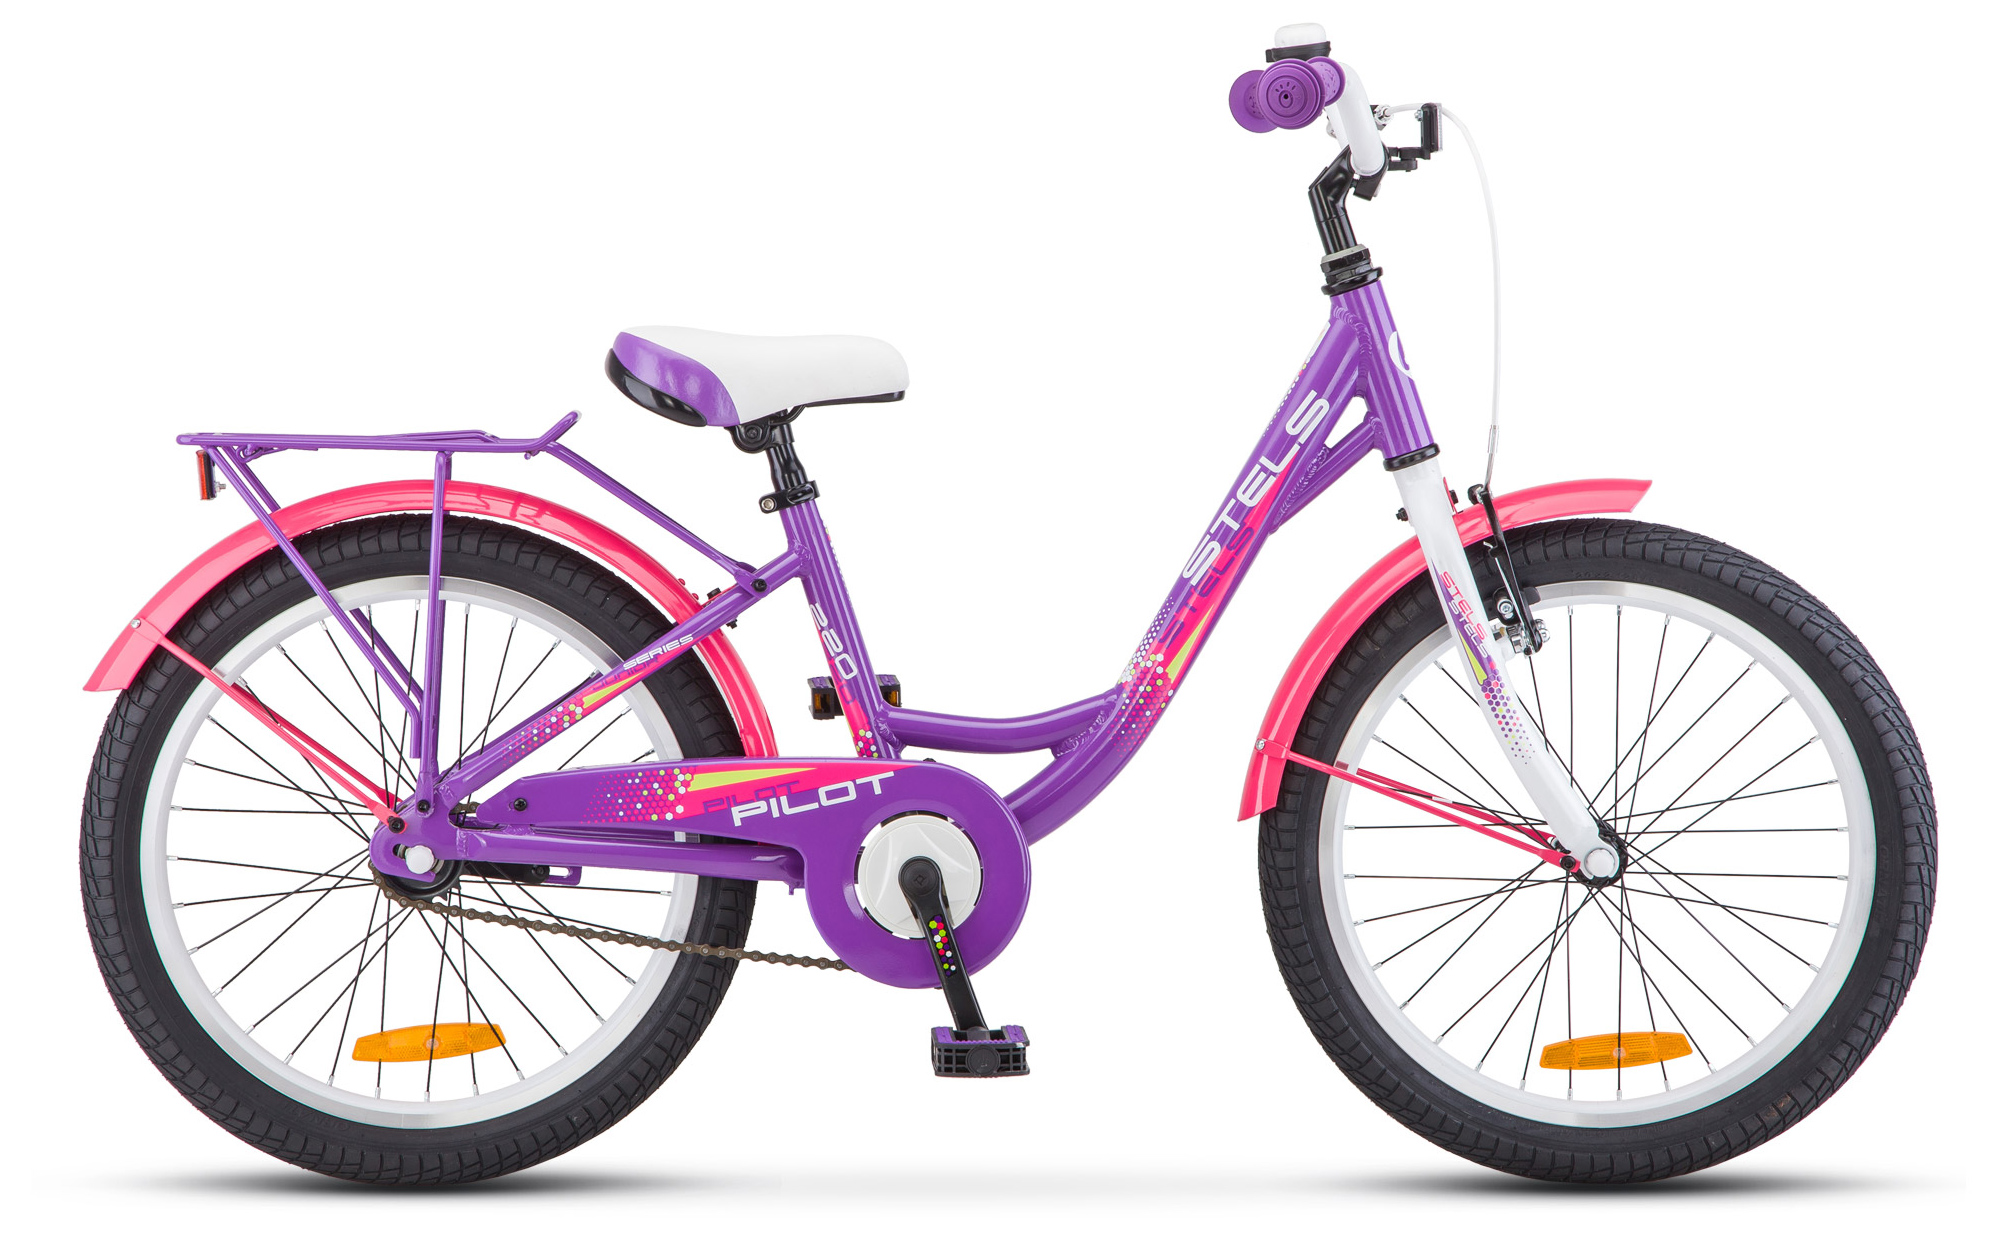  Отзывы о Детском велосипеде Stels Pilot 220 Lady 20" (V010) 2019